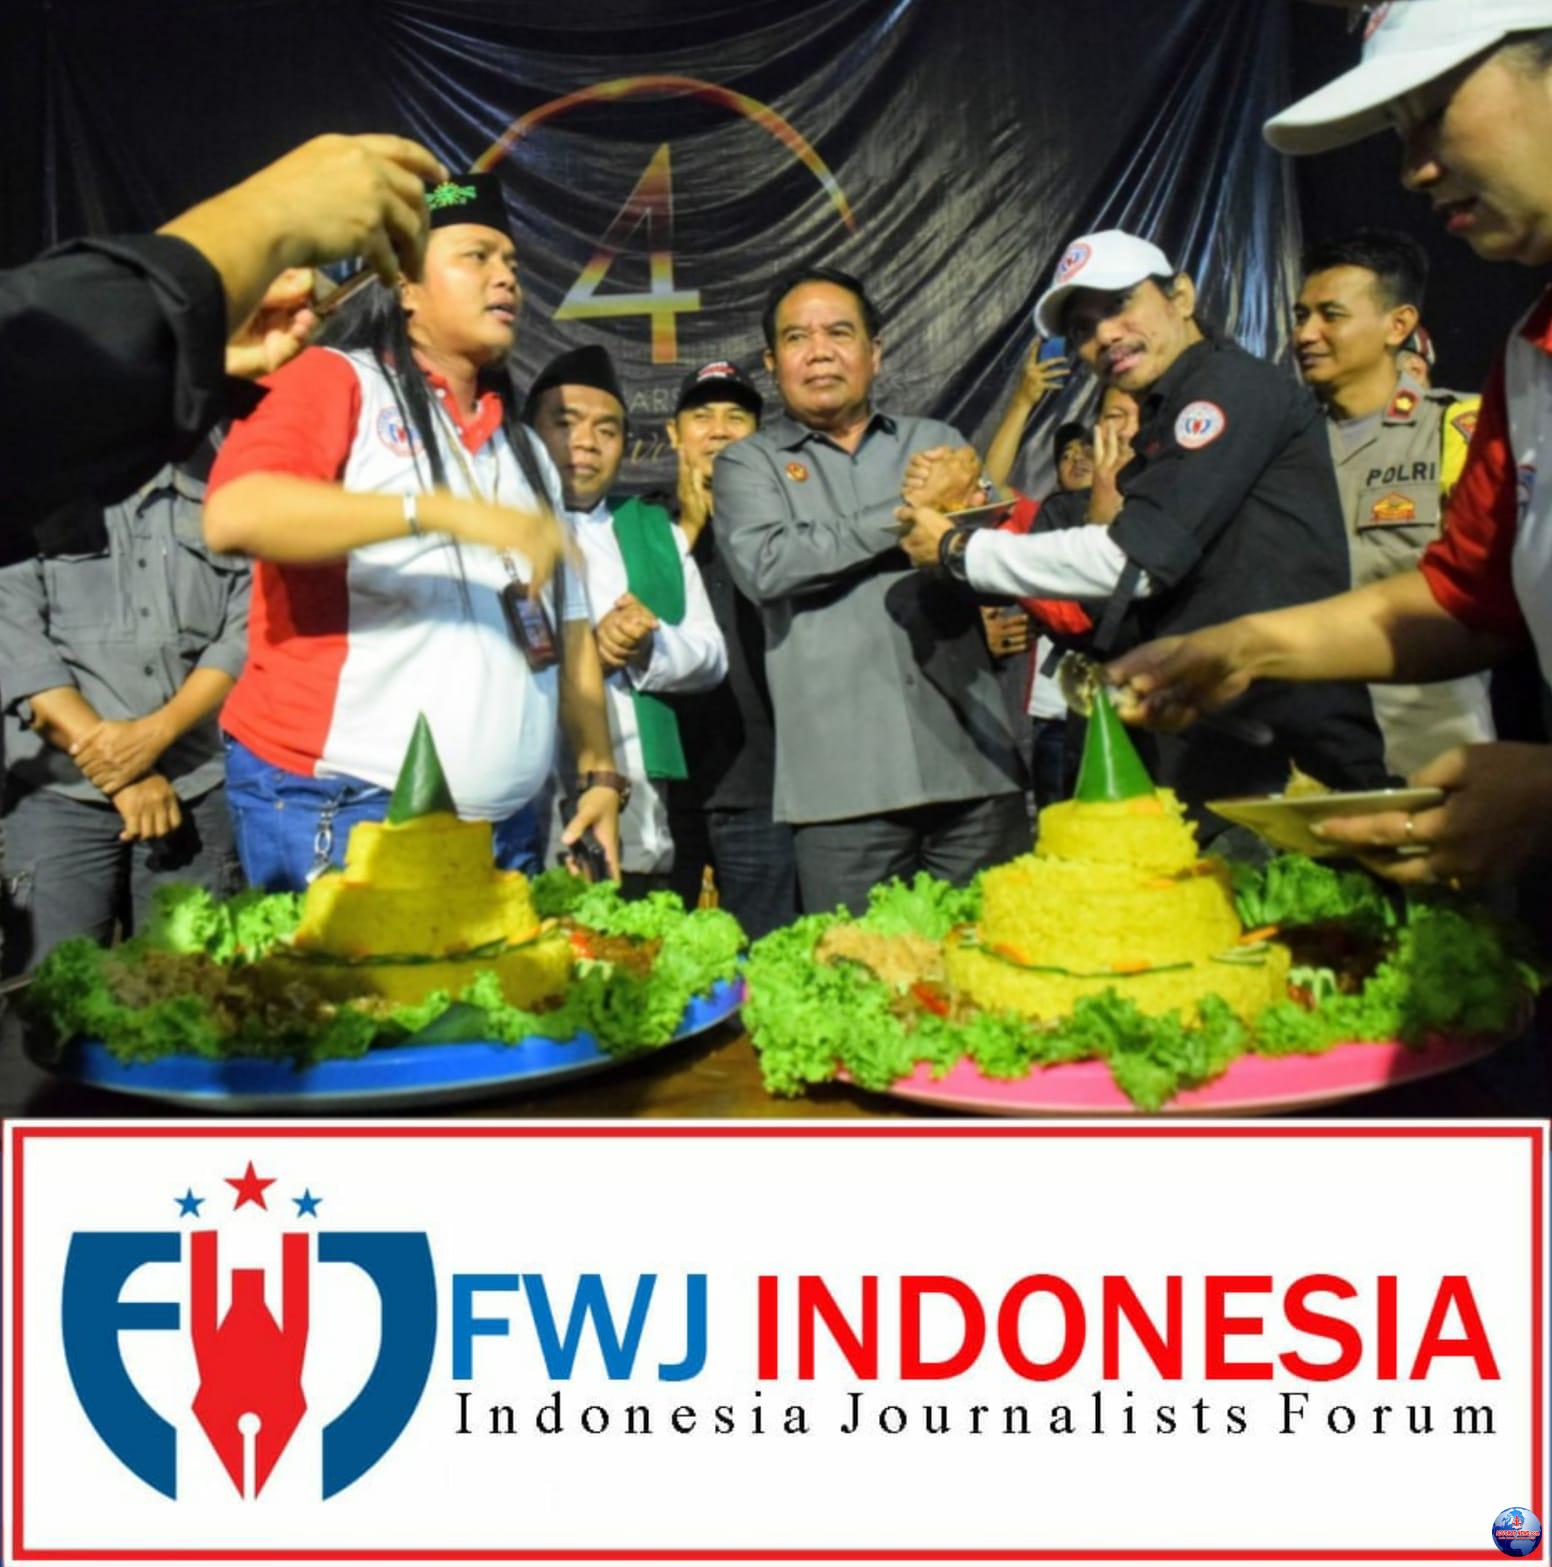 Perhelatan FWJ Indonesia’s 4th Annual Anniversary di Gedung Soetedja Jateng, Meriah dan Penuh Khidmat